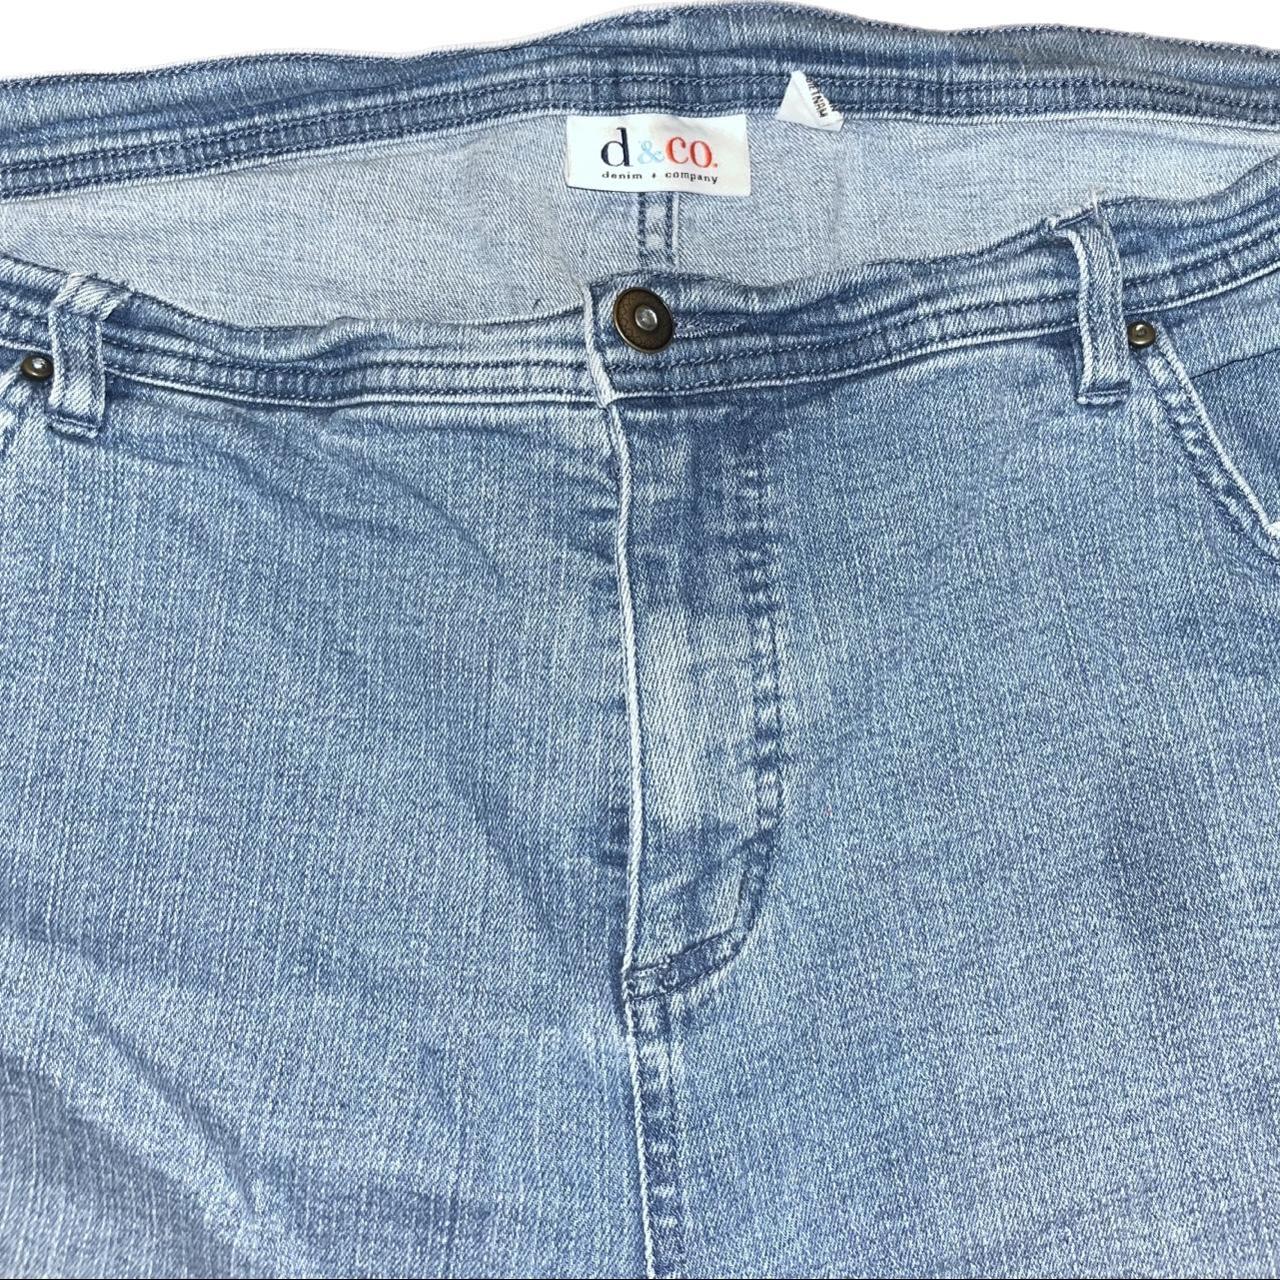 Denim & co. light blue jeans. Women’s size 20. Great... - Depop